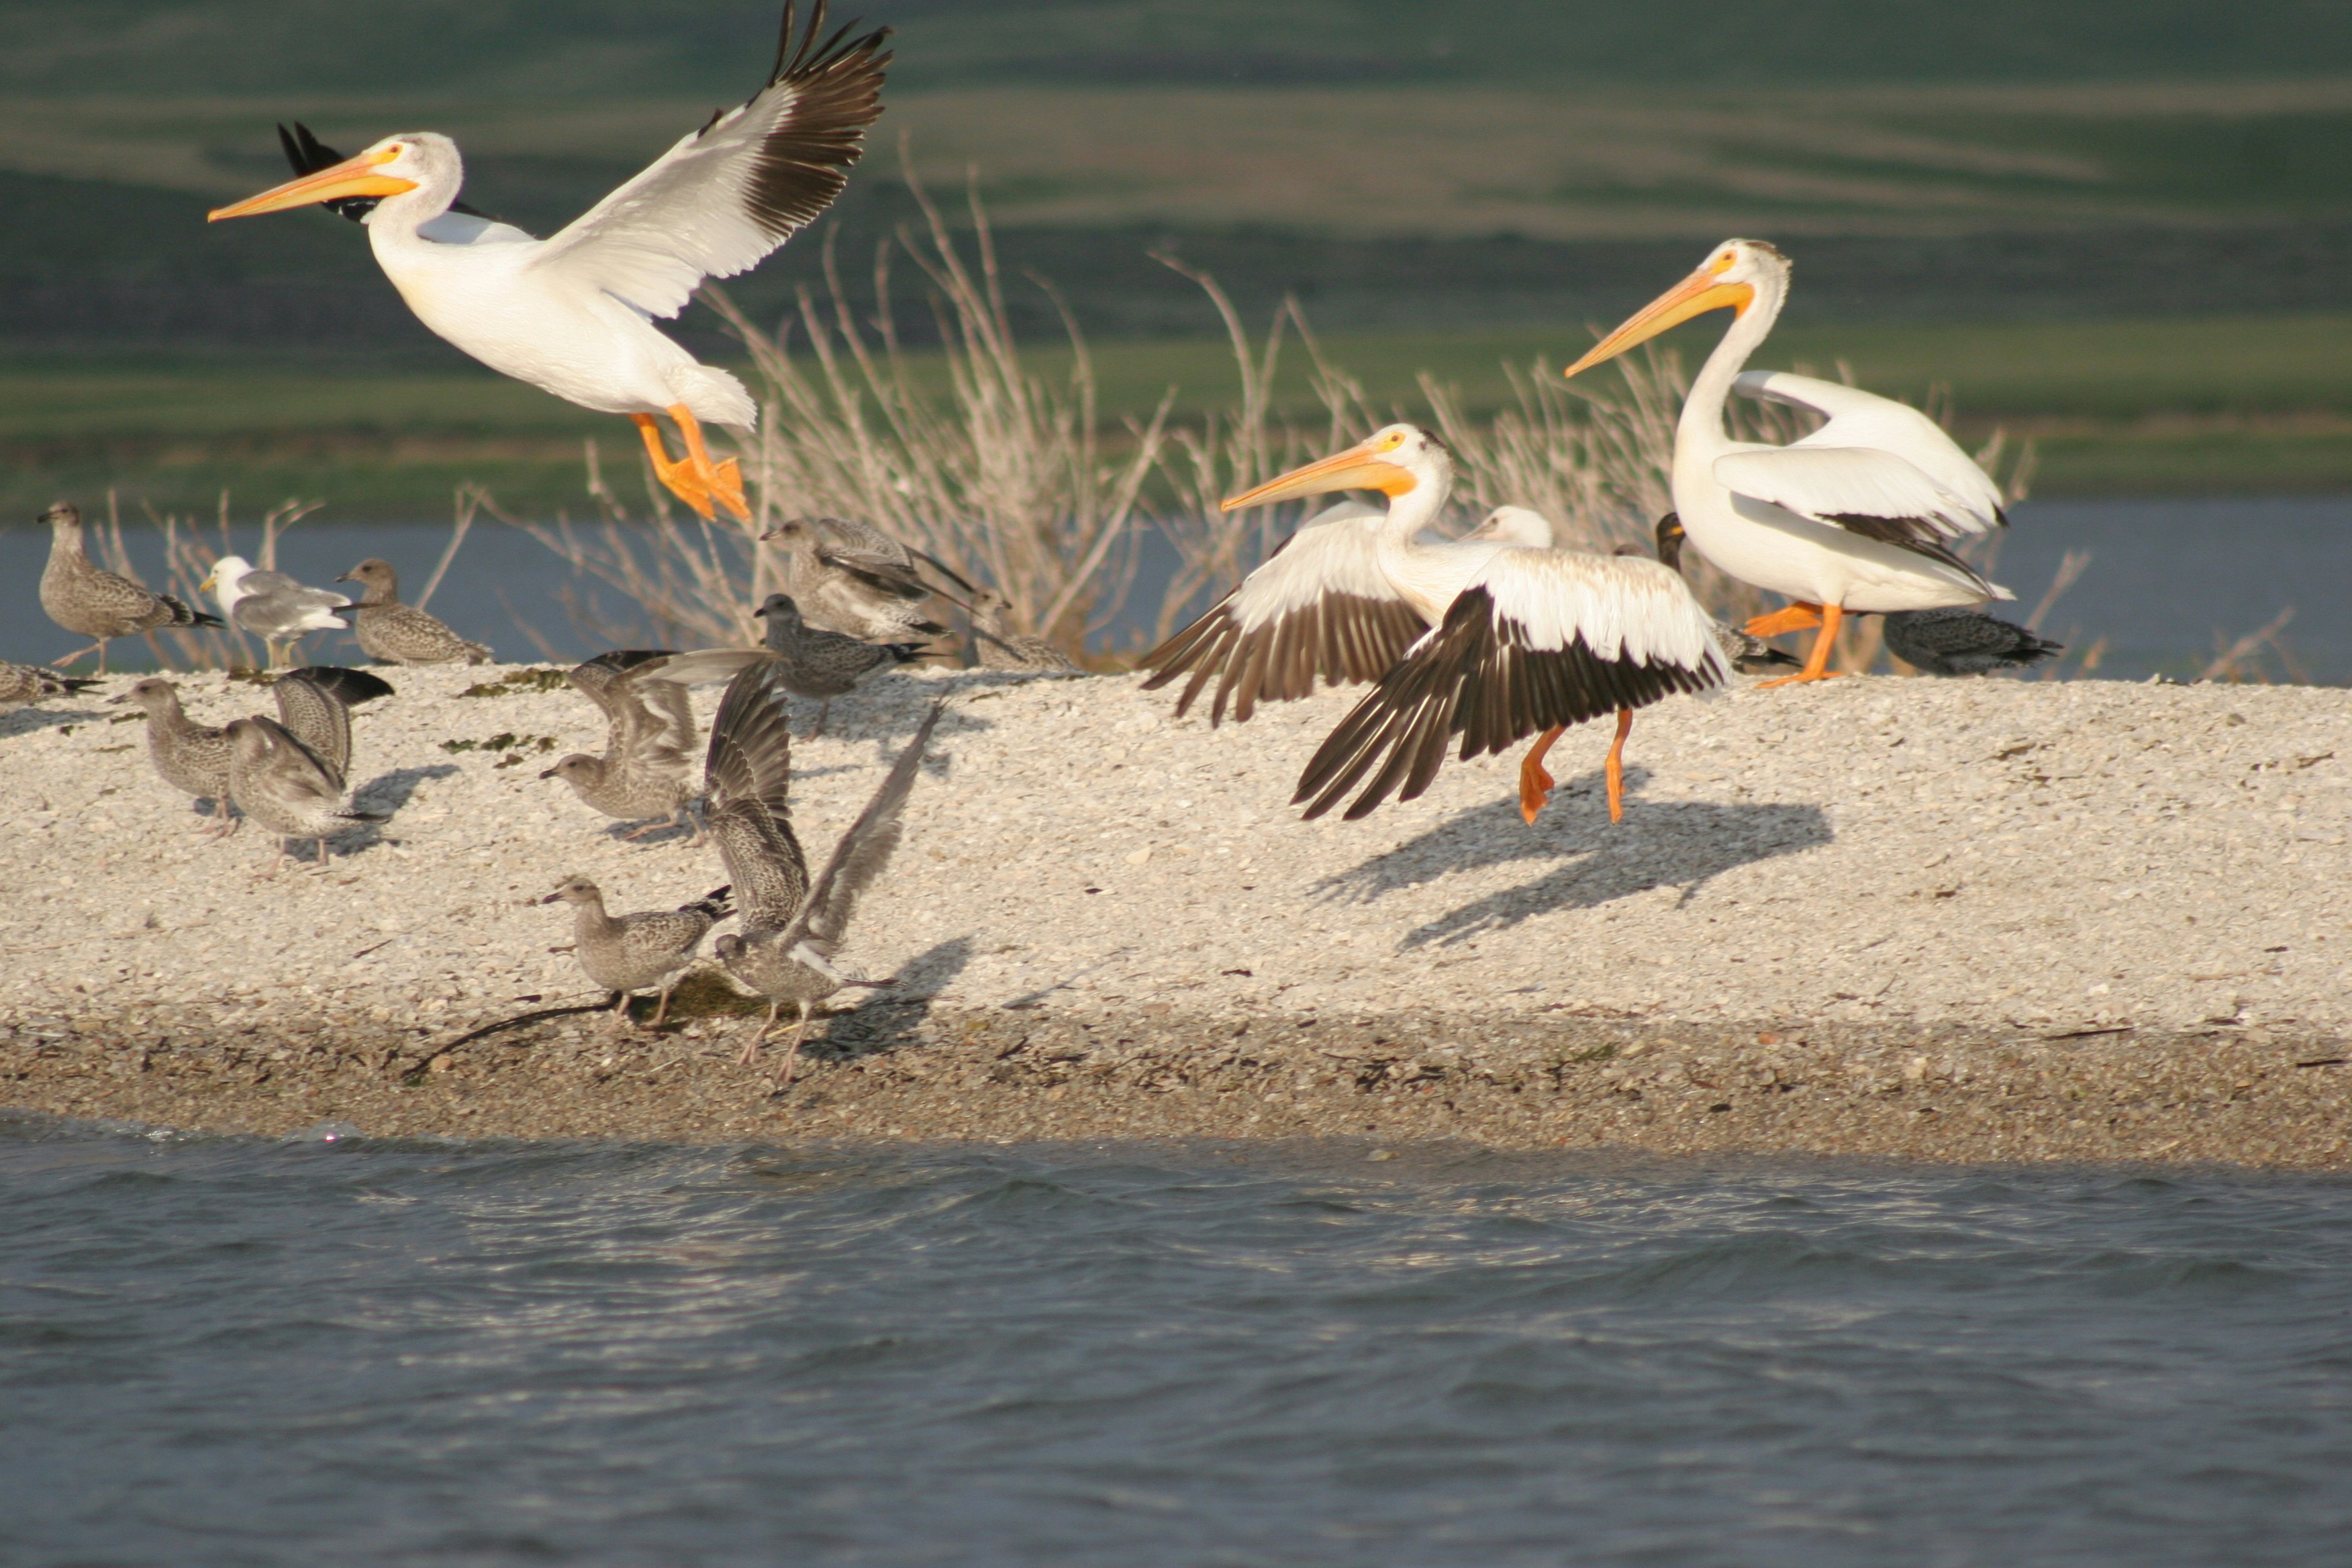 Pelicans at Blackfoot Reservoir in Idaho.